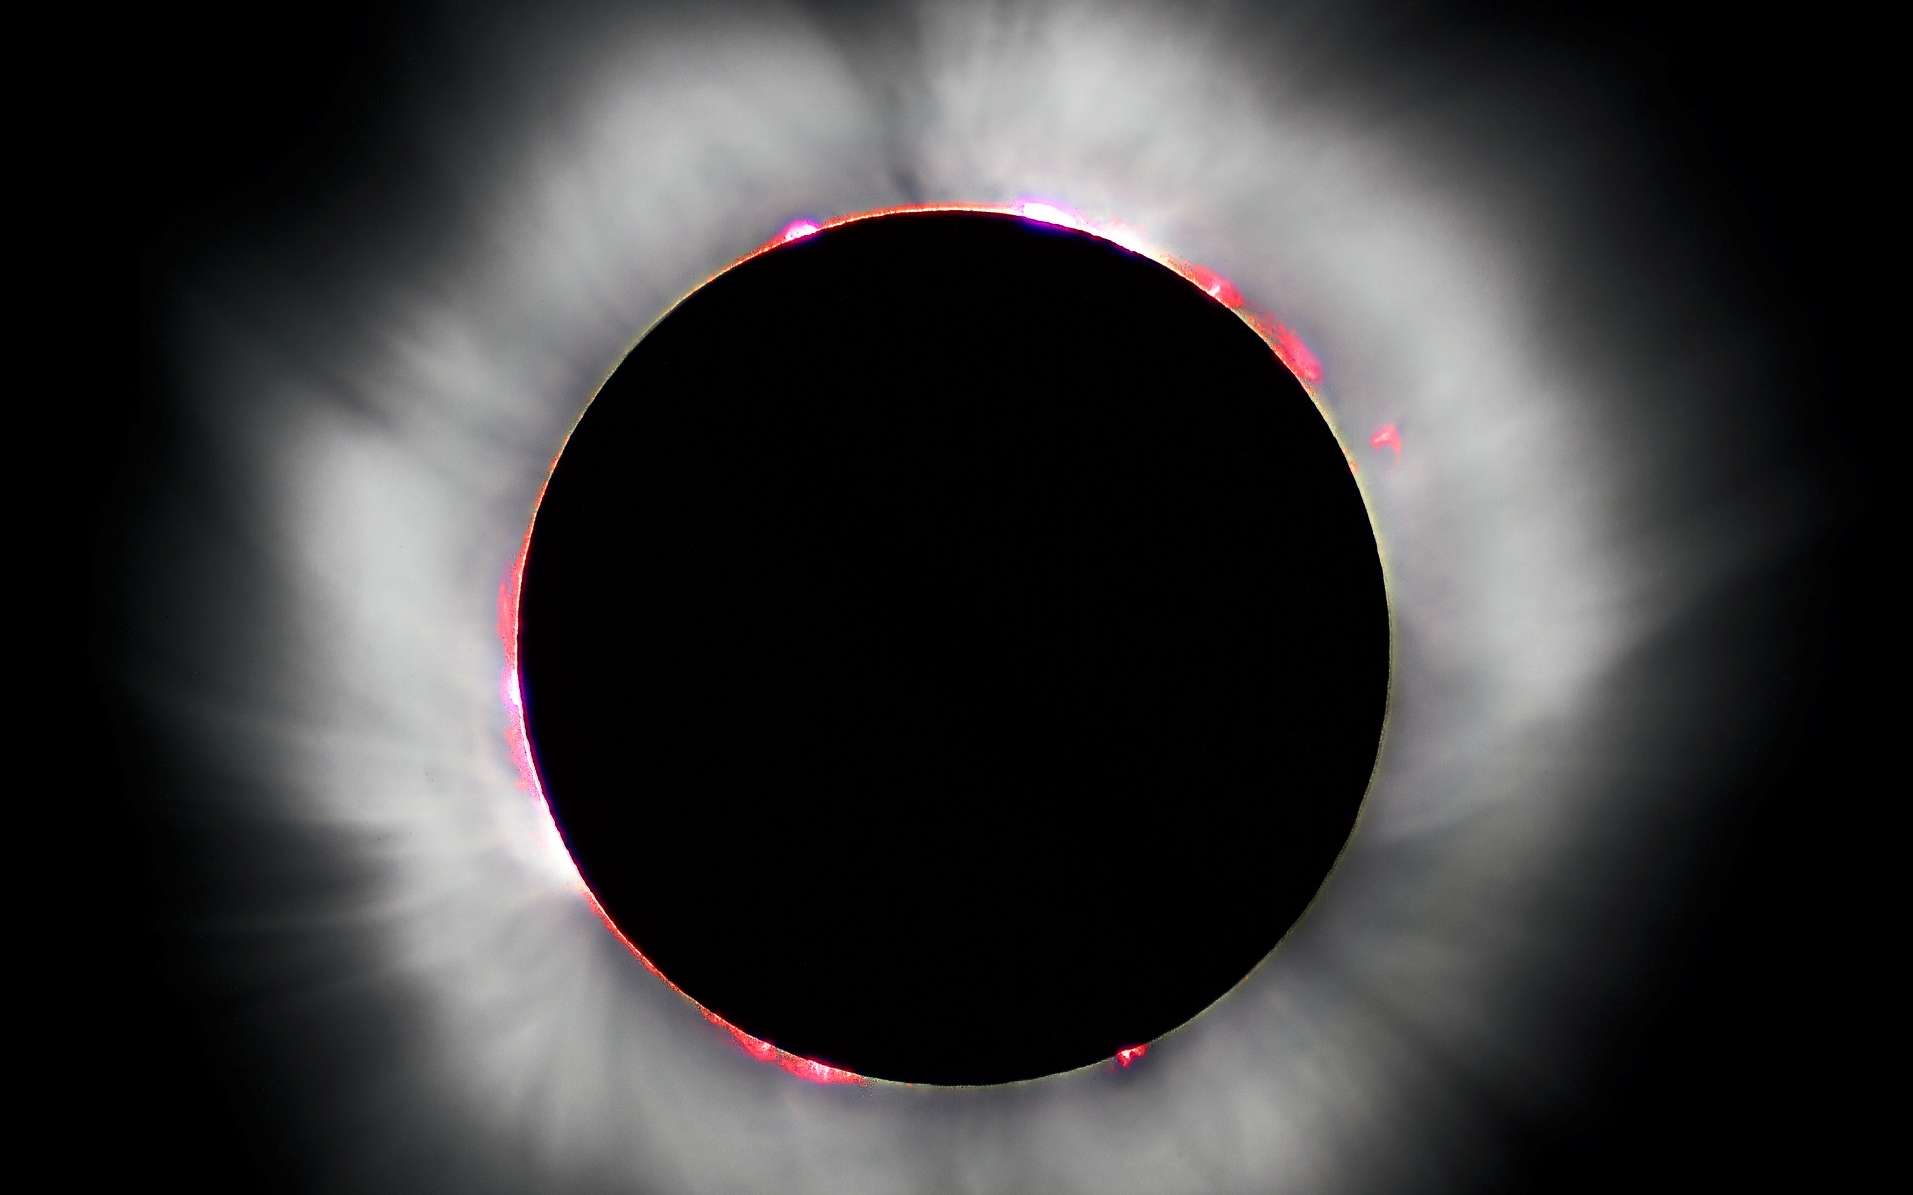 Une vue de l'éclipse totale de Soleil survenue en 1999. L'atmosphère du Soleil est bien visible sur cette photo ainsi que les protubérances solaires. © Luc Viatour, cc by sa 3.0, Wikipédia